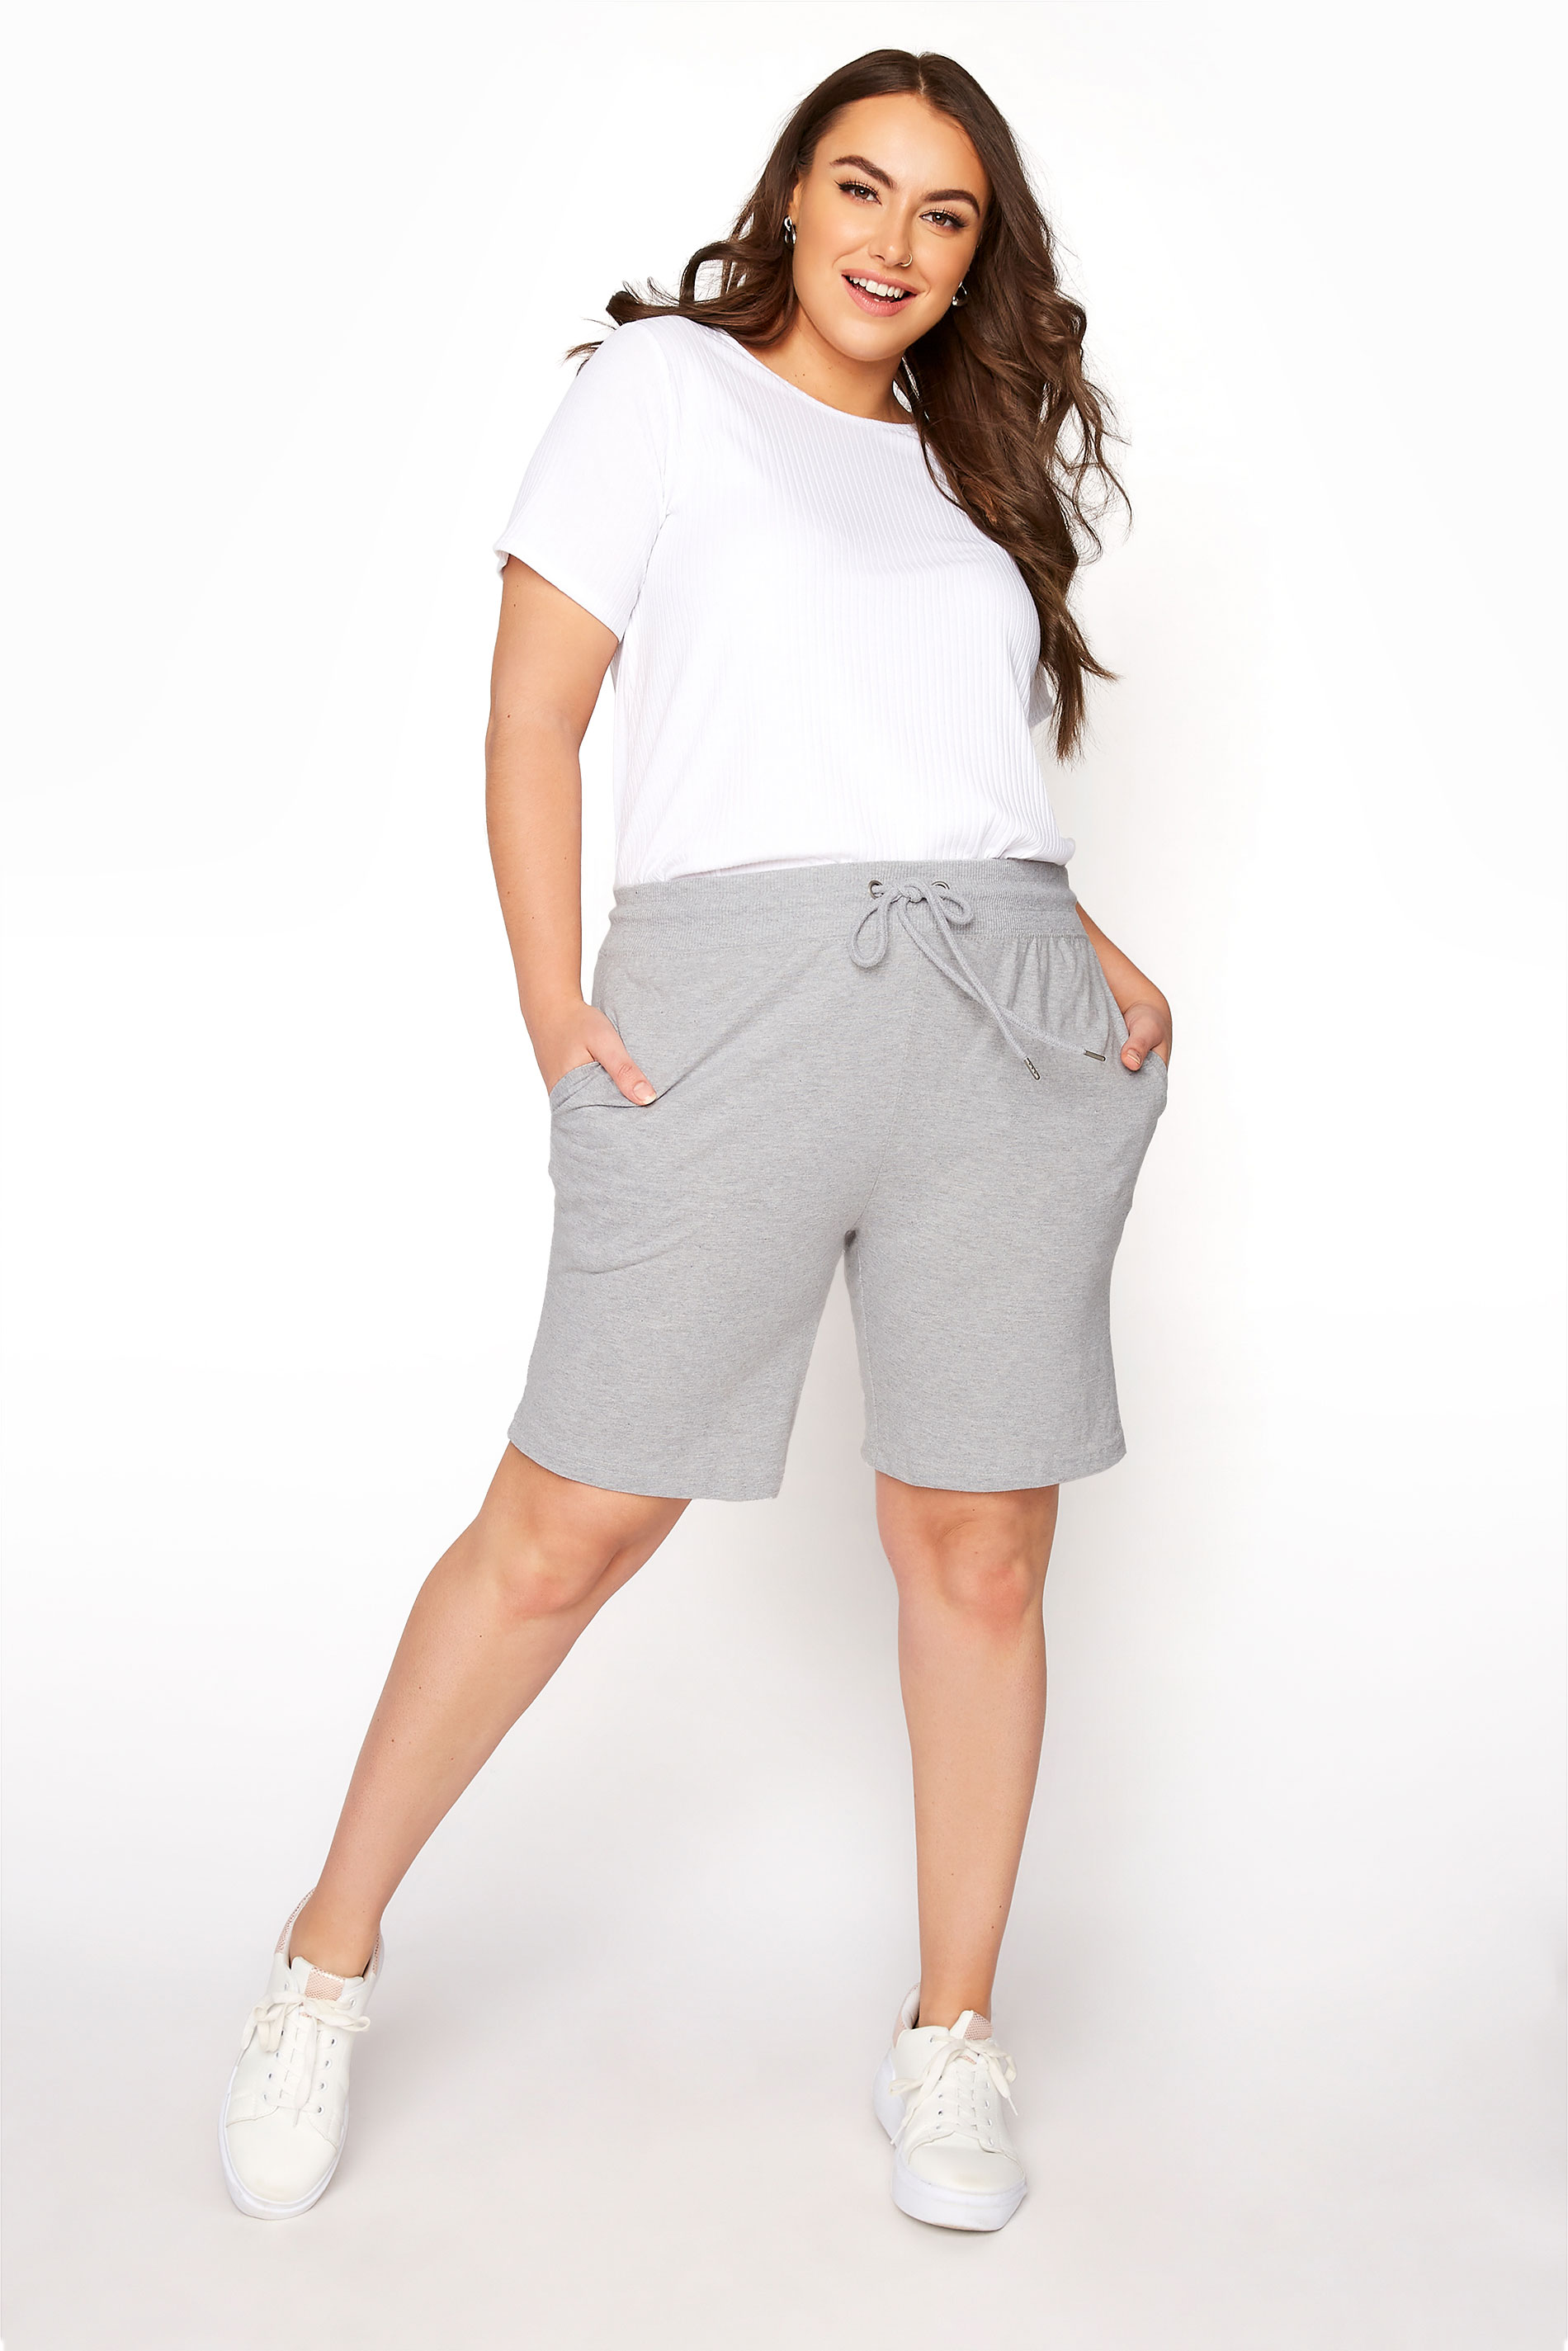 Grande taille  Shorts Grande Taille Grande taille  Shorts à la mode | Short Gris Style Jogging - YY95124